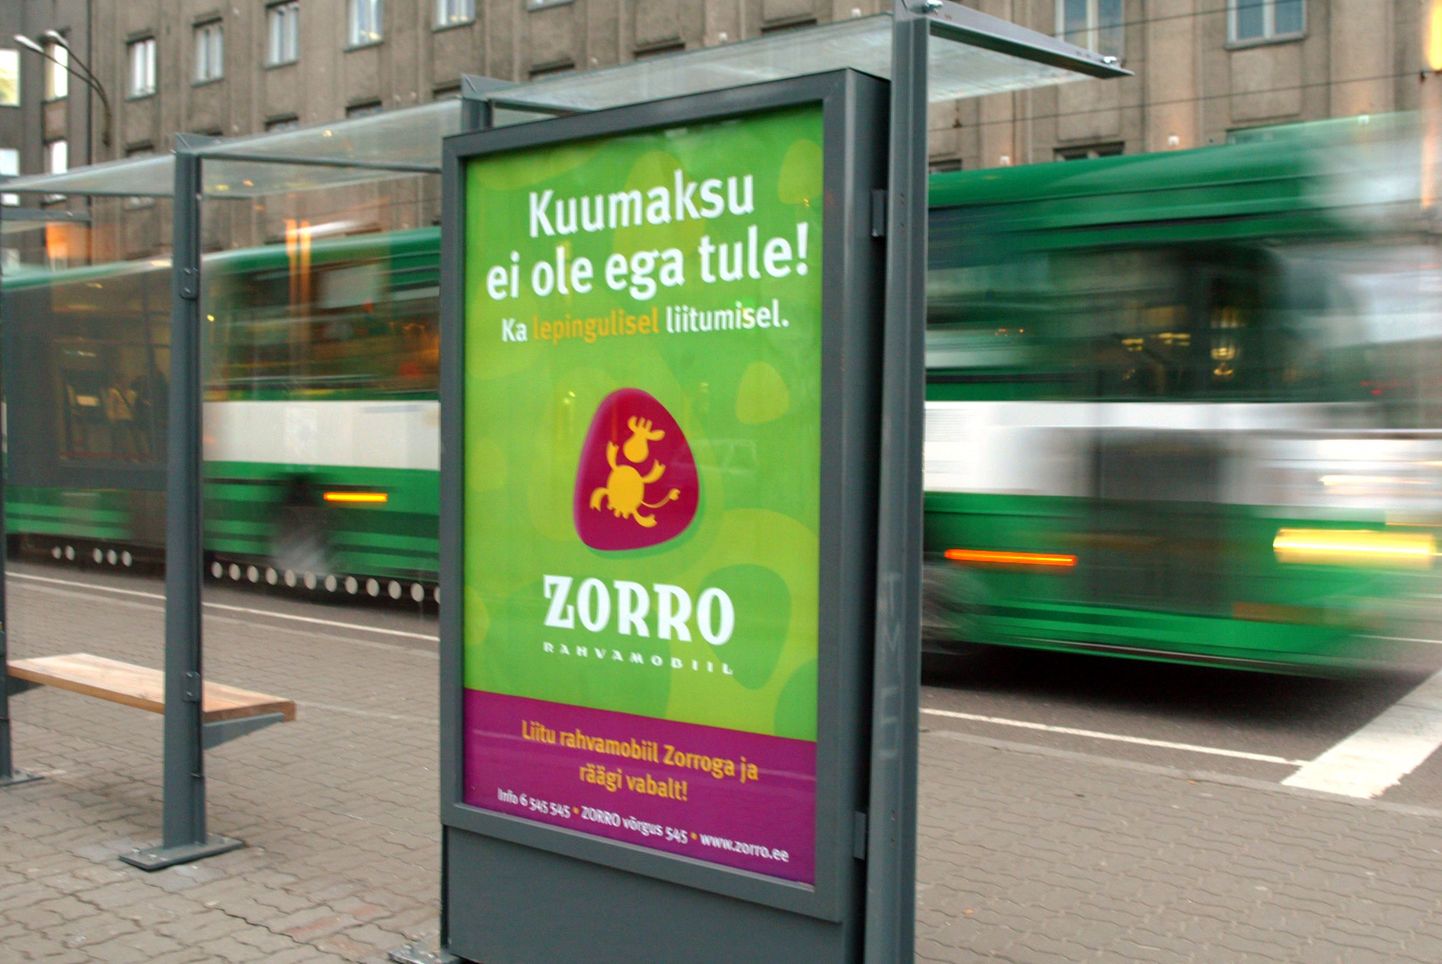 Bravocomi rahvamobiili ZORRO reklaam 2004. aastal.